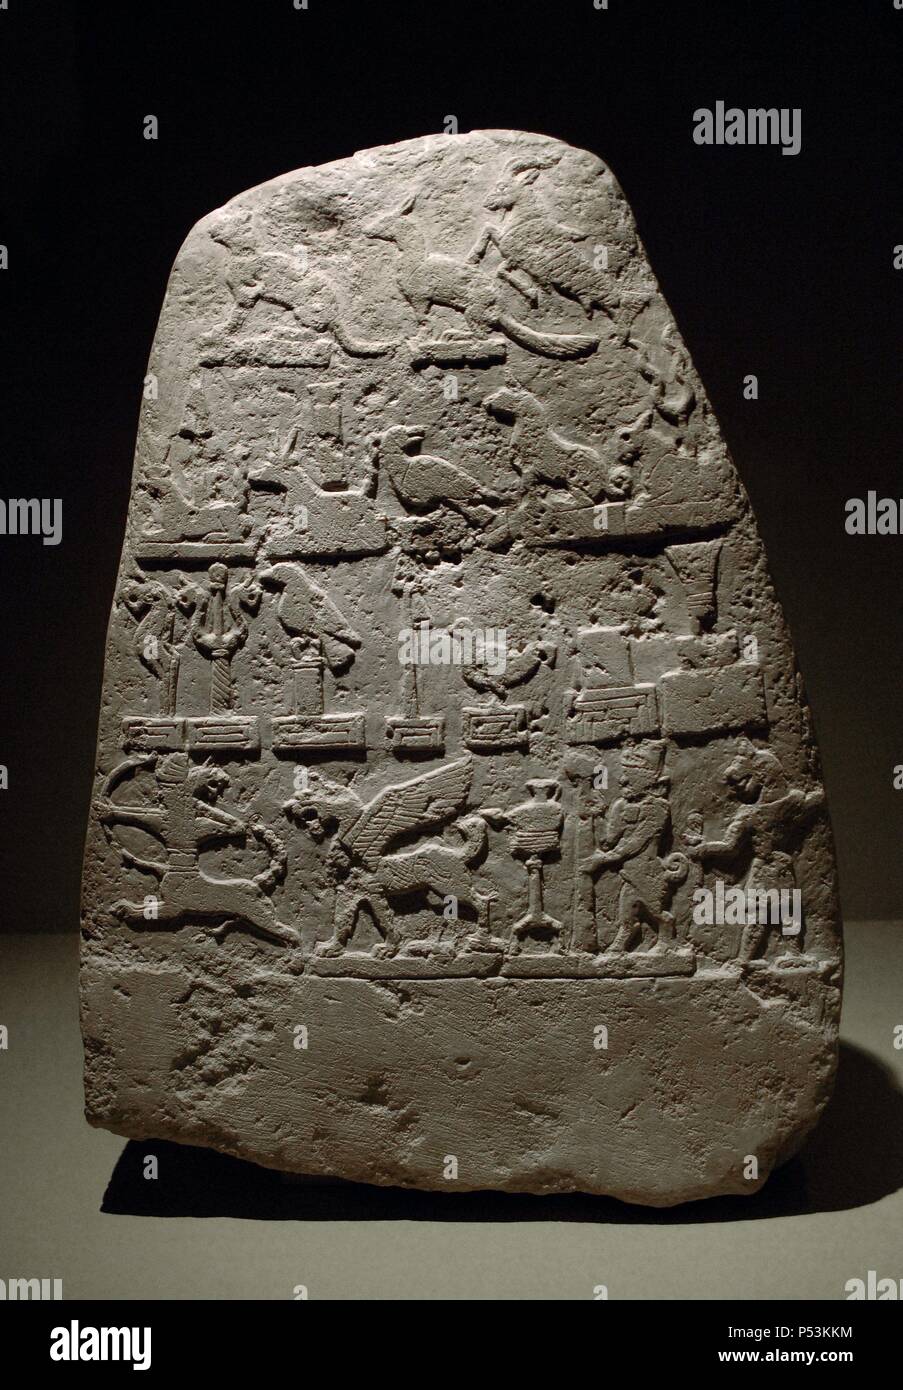 ARTE MESOPOTAMICO. EPOCA CASITA. KUDURRU de la primera mitad del s. XII a. C. Estela en piedra calcárea decorada con relieves de símbolos divinos. En las franjas superiores aparecen ANIMALES Y CRIATURAS FANTASTICOS y en la franja inferior un CENTAURO TIRANDO EL ARCO, DRAGON-LEON, LAMPARA CON SOPORTE (Símbolo de Nusku), HOMBRE-TORO CON ESTANDARTE y un HOMBRE-LEON. Procede de Merkes. Babilonia. Exposición Babilonia. Museo del Louvre. París. Francia. Stock Photo